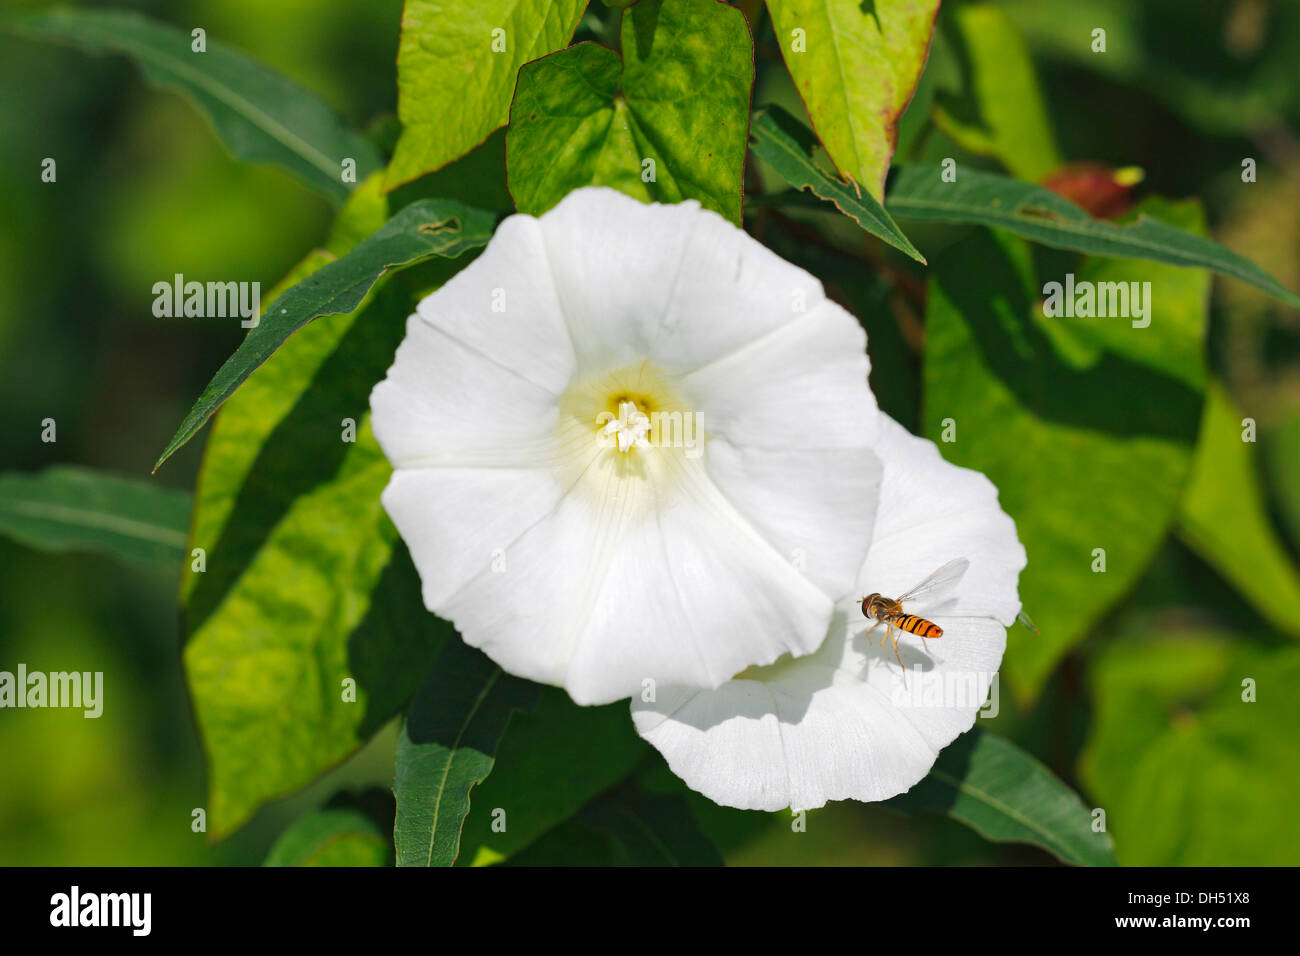 Flowering Hedge Bindweed or Lady's Nightcap (Calystegia sepium ssp. sepium, Convolvulus sepium) Stock Photo